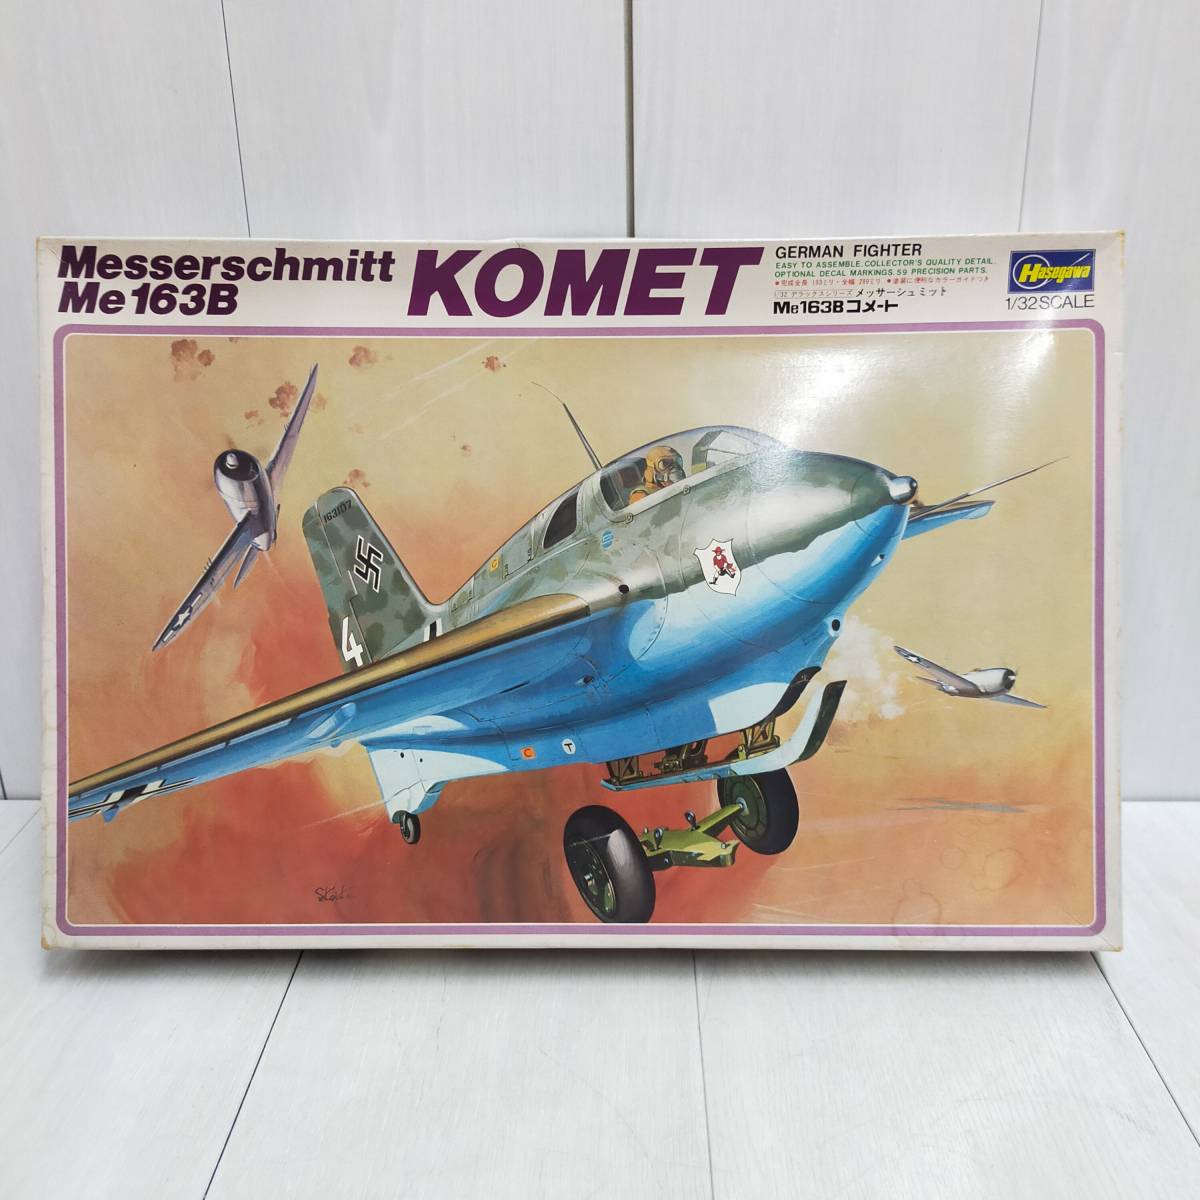 【 送料無料 】 未組立 ◆ Hasegawa メッサーシュミット Me163B コメ-ト 1/32 スケール JS-087 ハセガワ Messerschmitt KOMET プラモ 模型_画像1